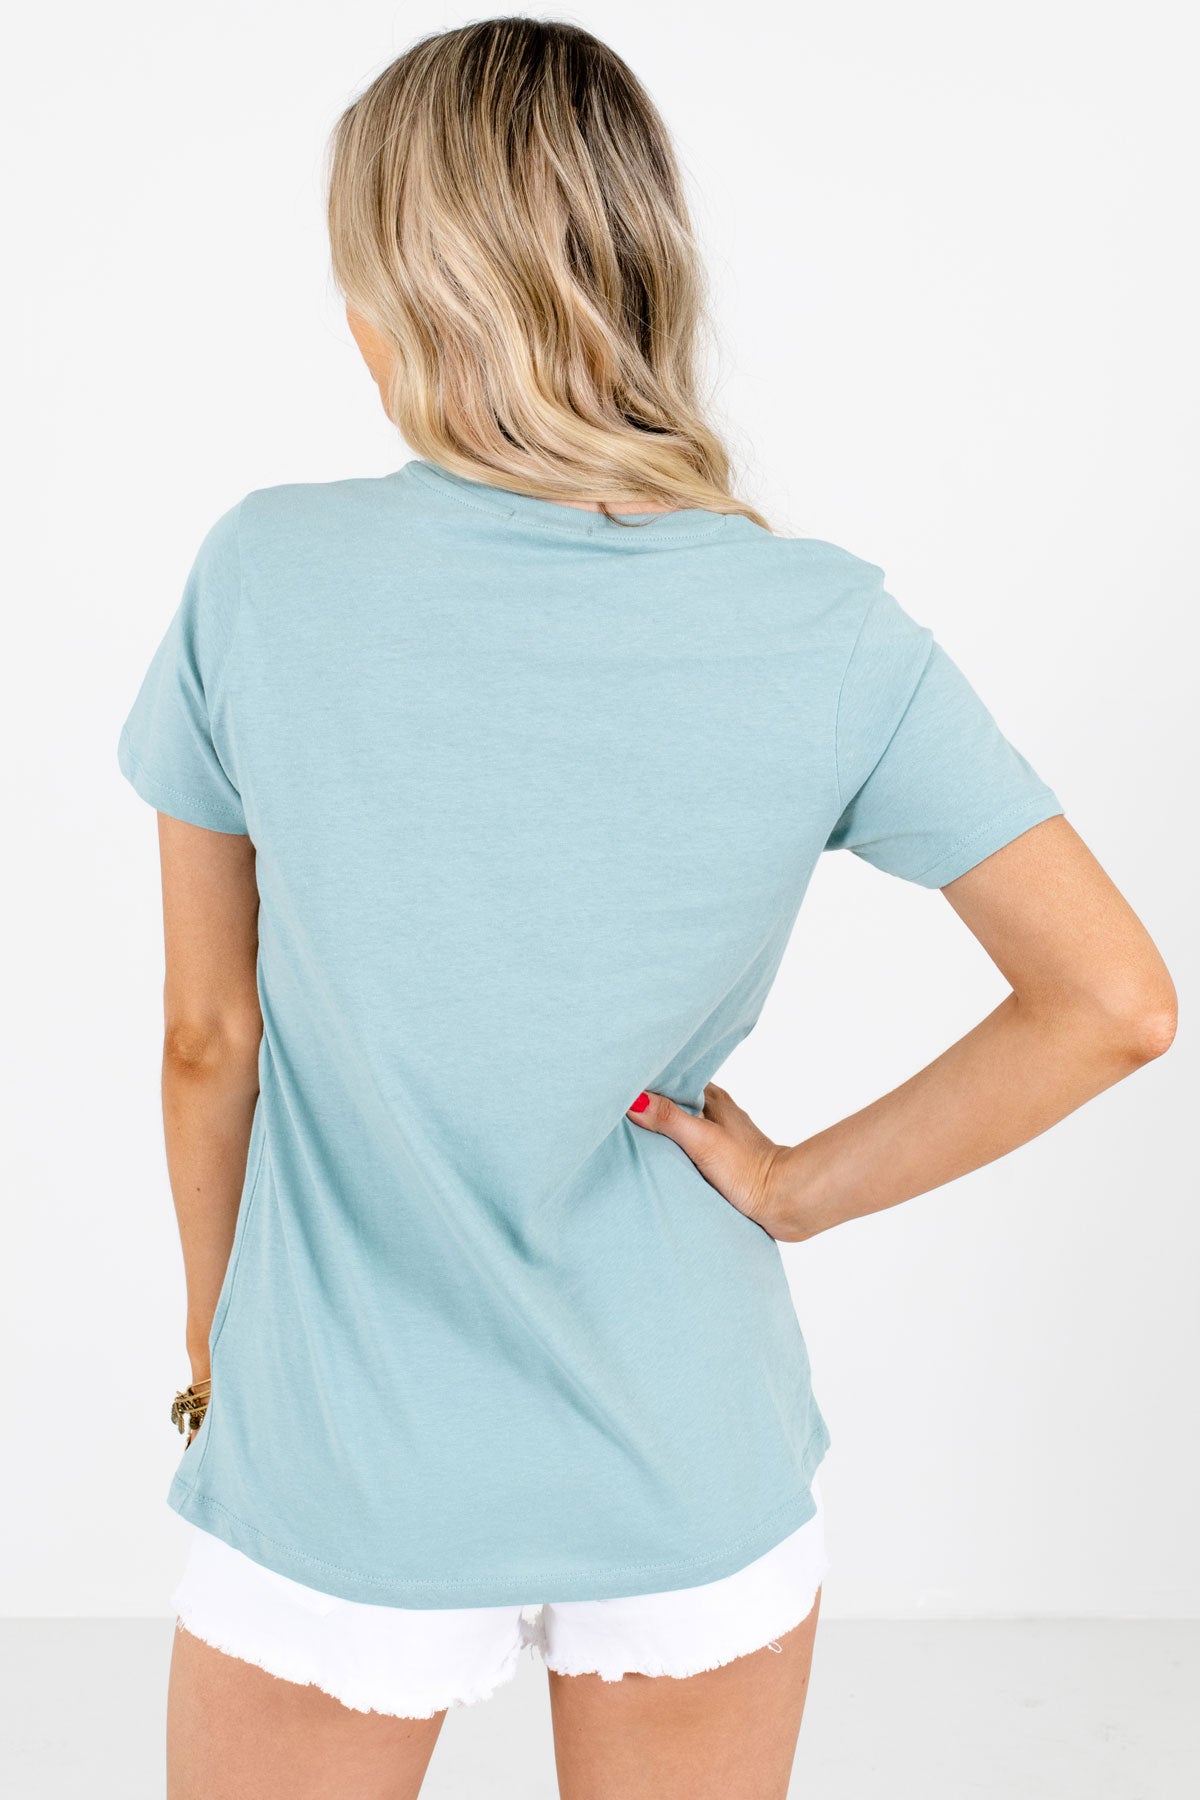 Women's Blue Round Neckline Boutique Graphic T-Shirts